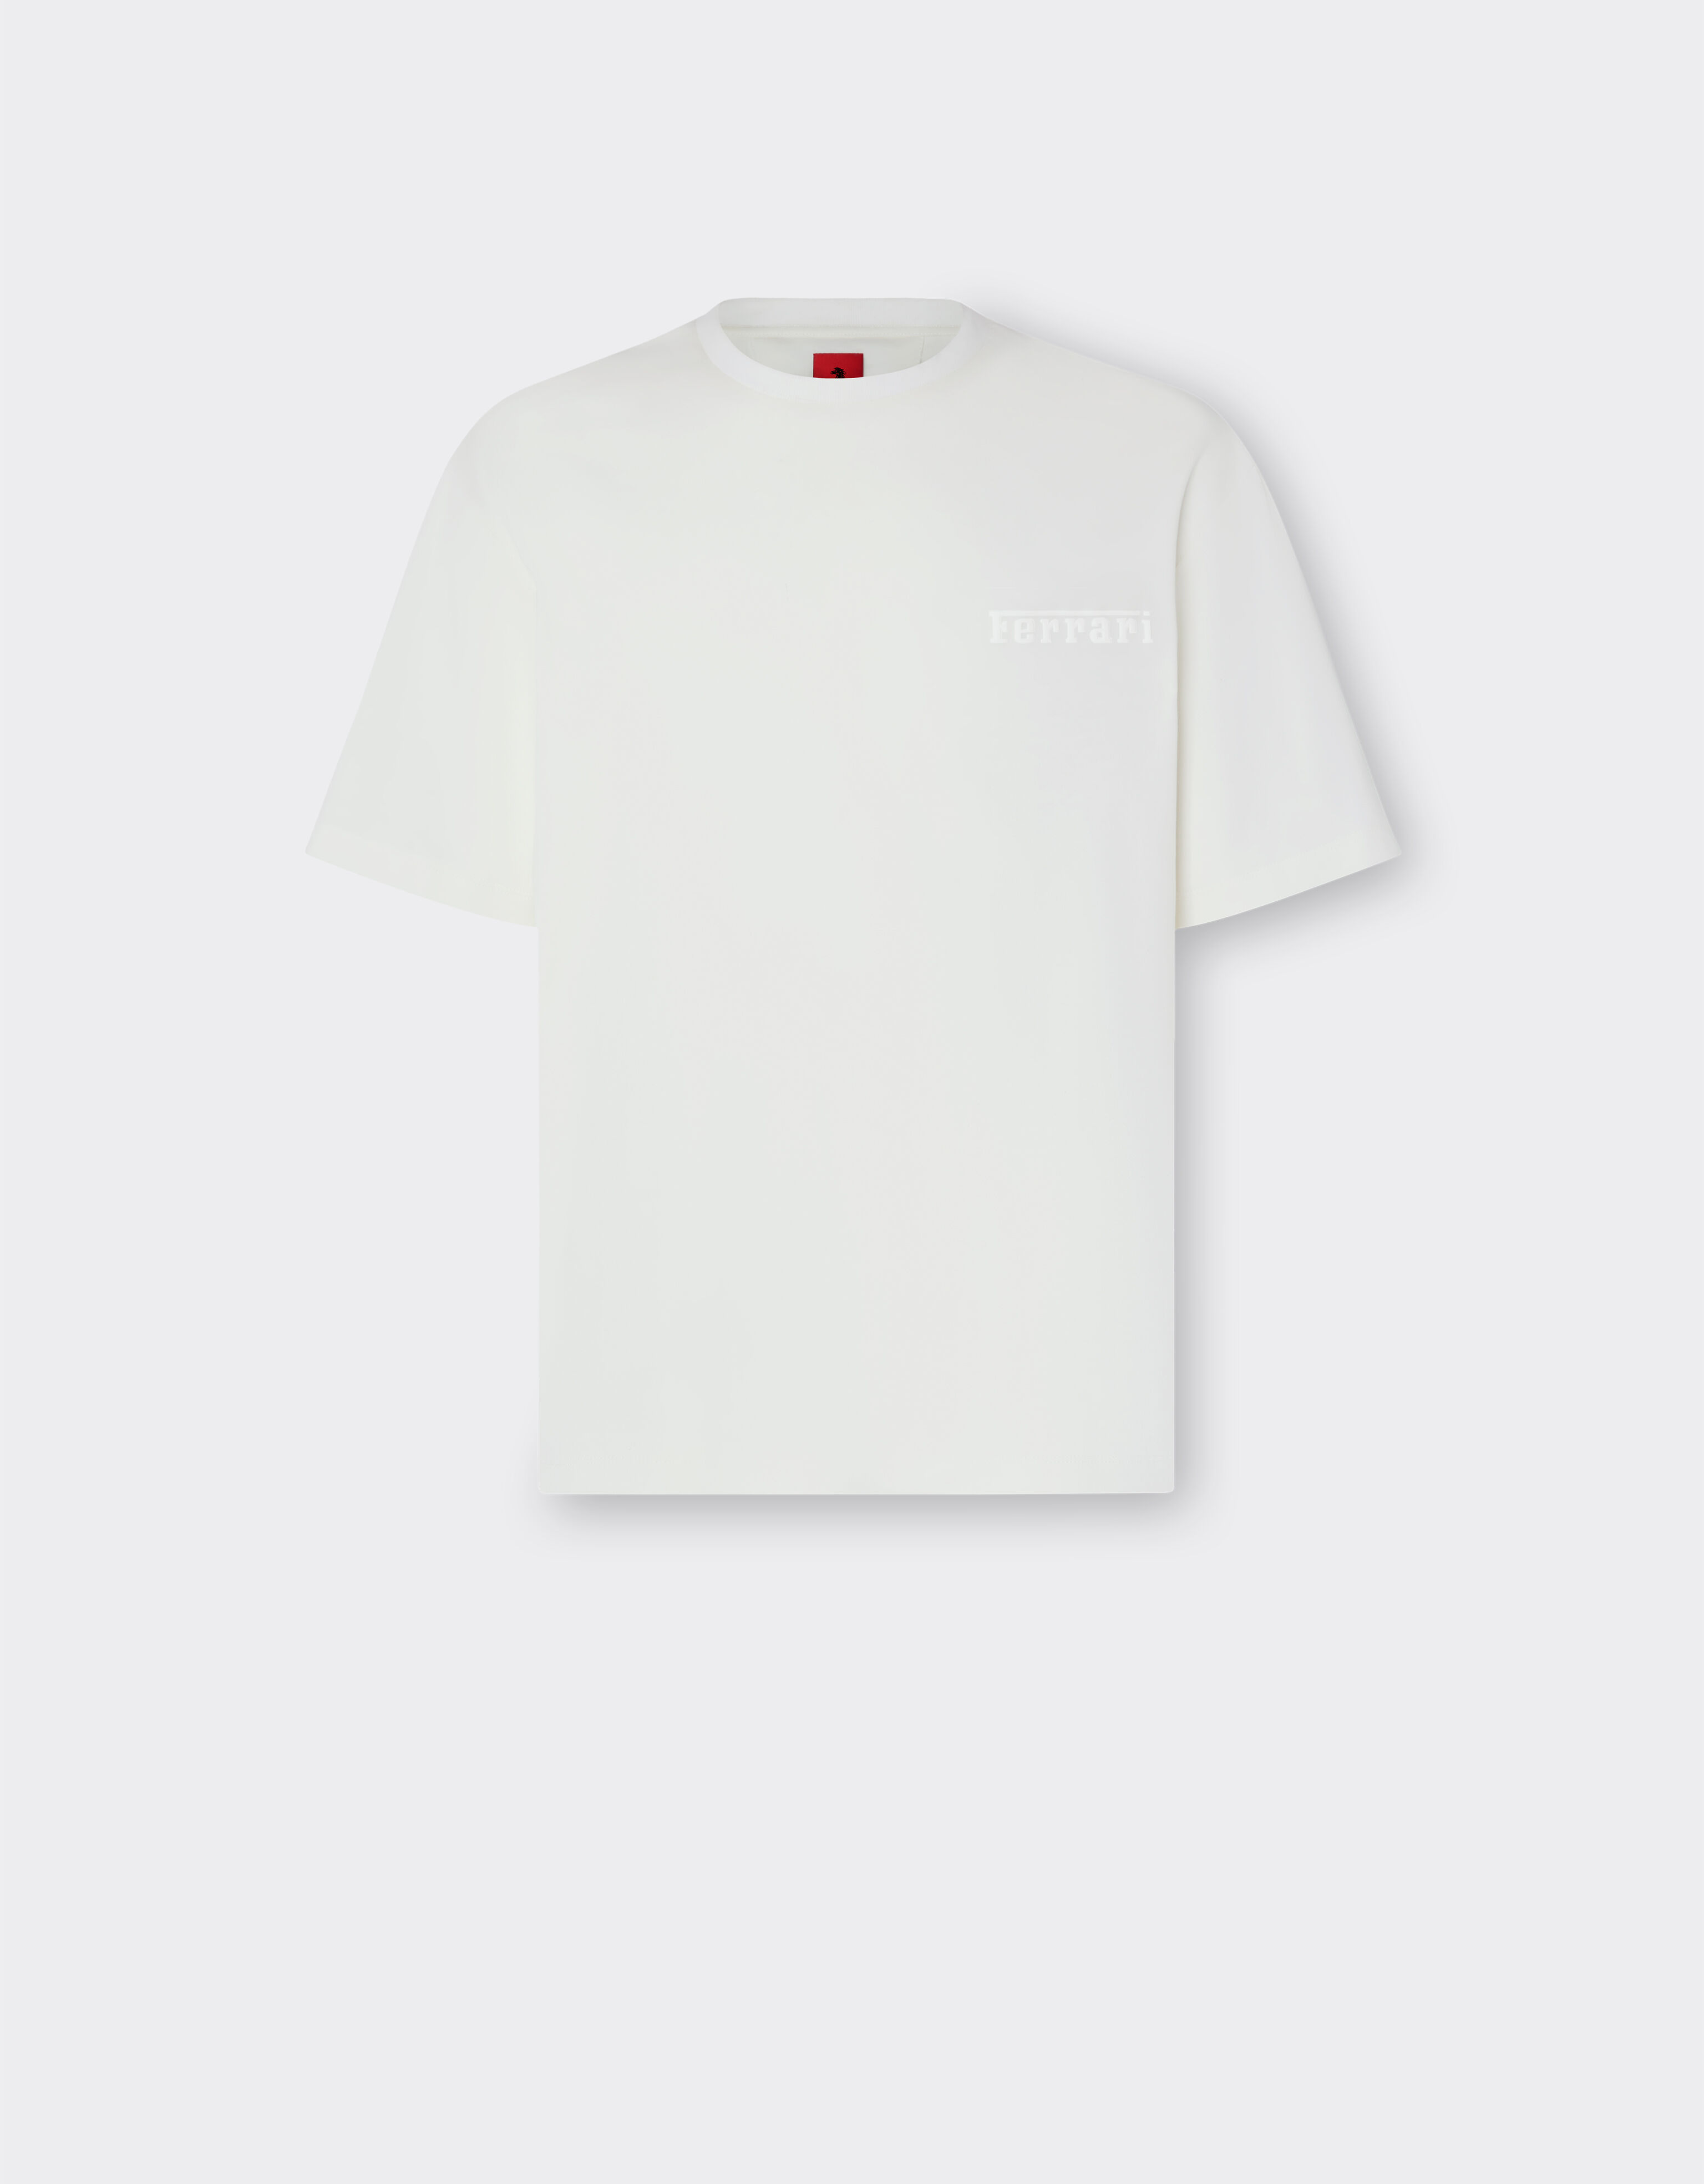 Ferrari T-shirt en coton avec logo Ferrari Blanc optique 48114f